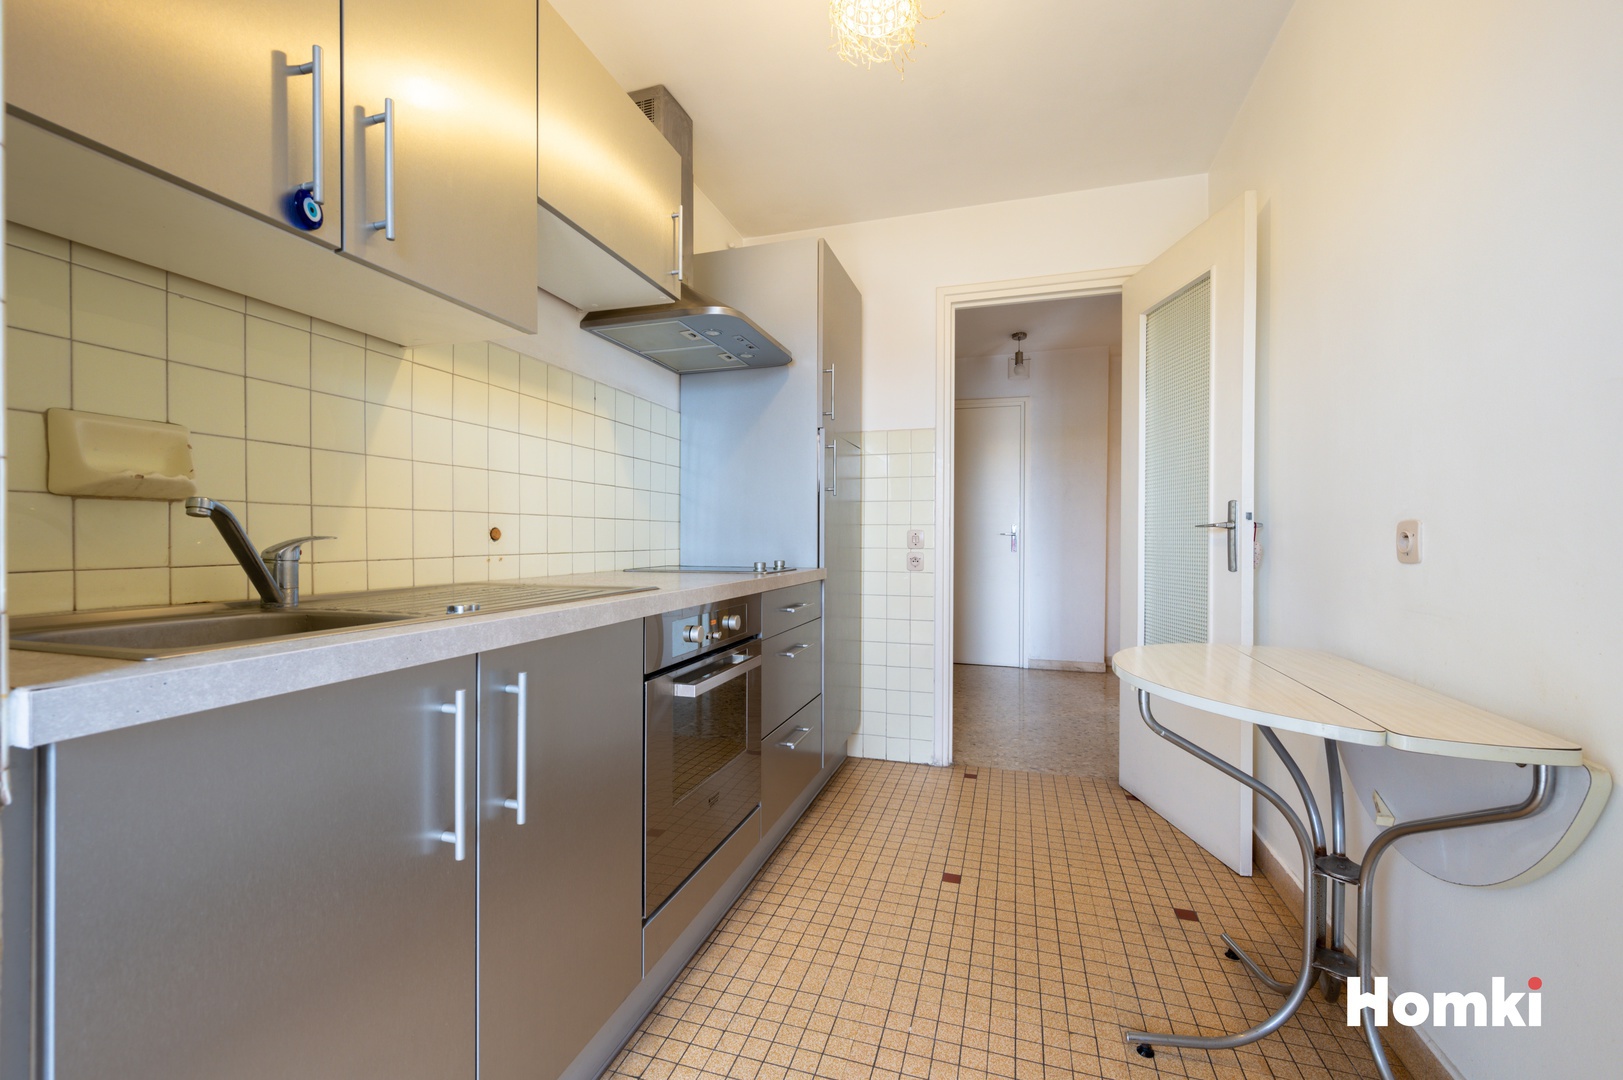 Homki - Vente Appartement  de 38.0 m² à Antibes 06600